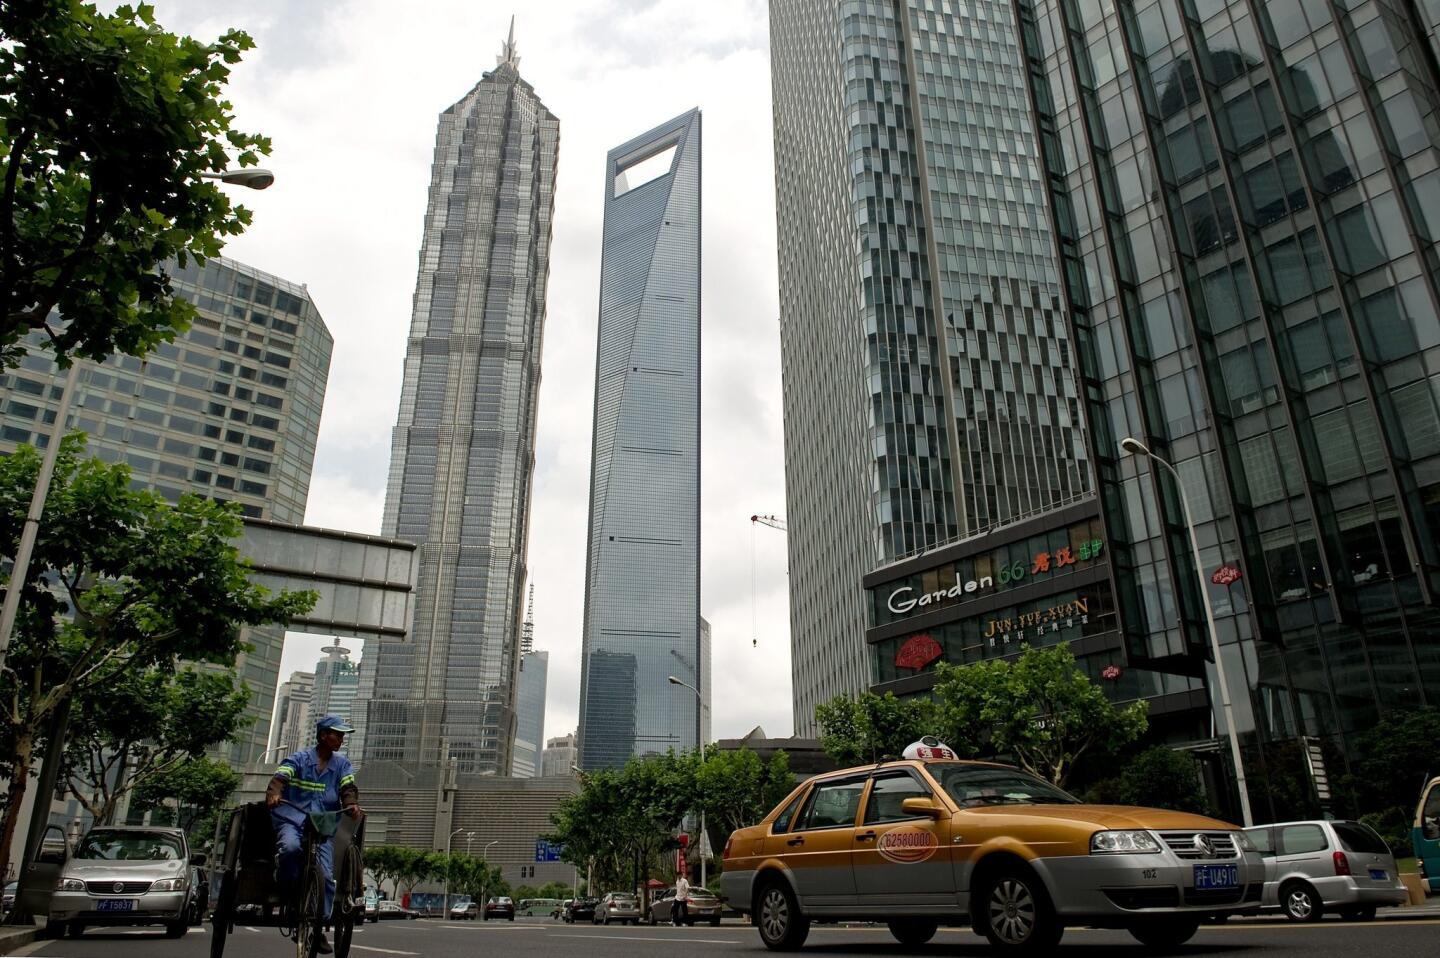 9. Shanghai World Financial Center, Shanghai (1,614 feet)